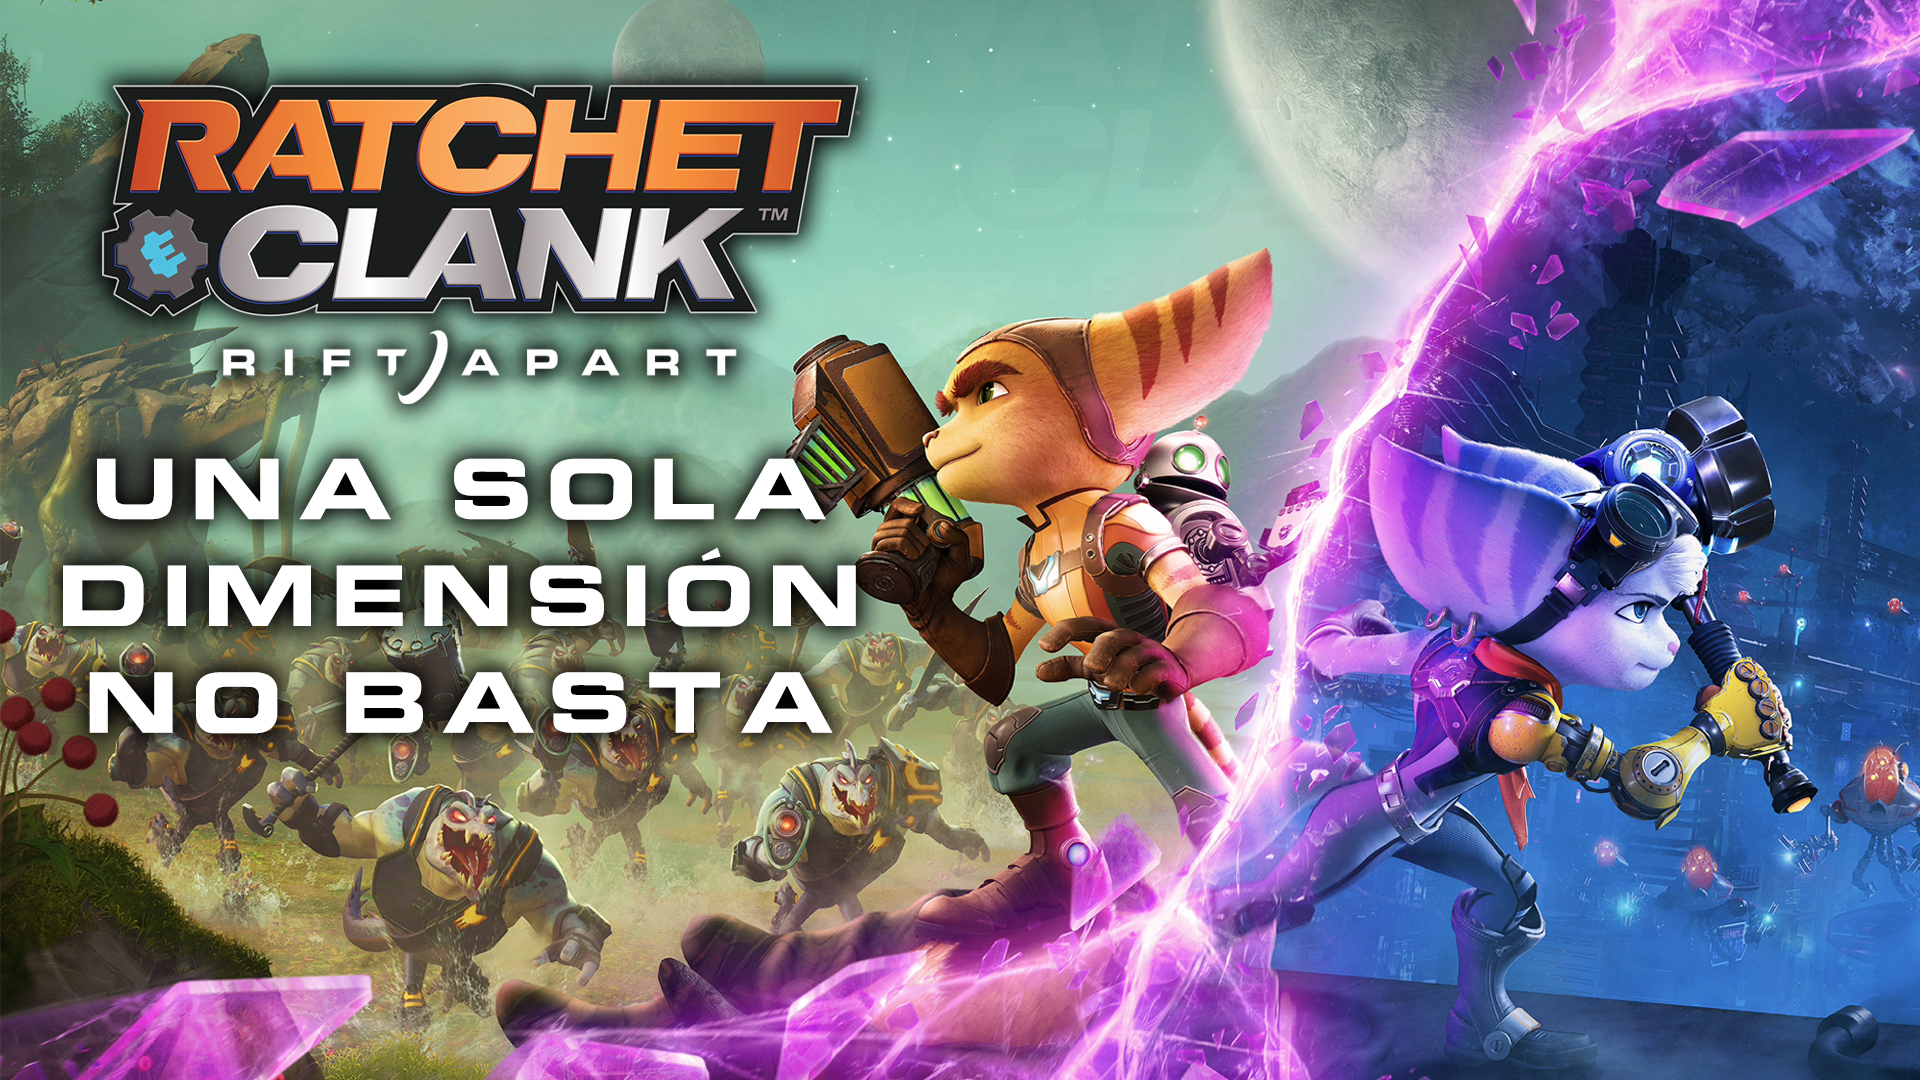 Ratchet and Clank: Rift Apart – Una sola dimensión no basta